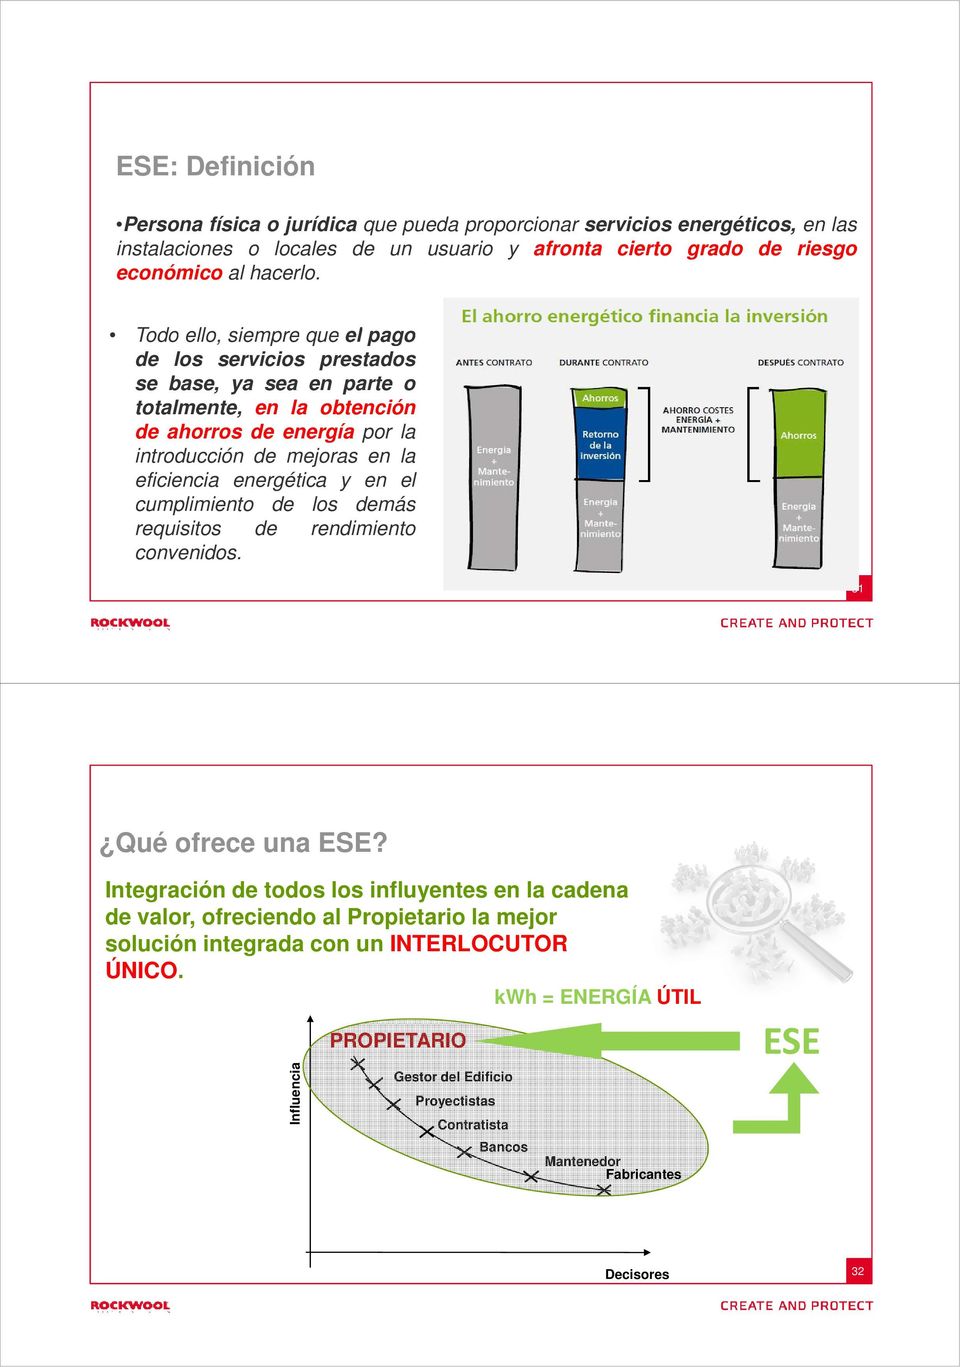 energética y en el cumplimiento de los demás requisitos de rendimiento convenidos. 31 Qué ofrece una ESE?